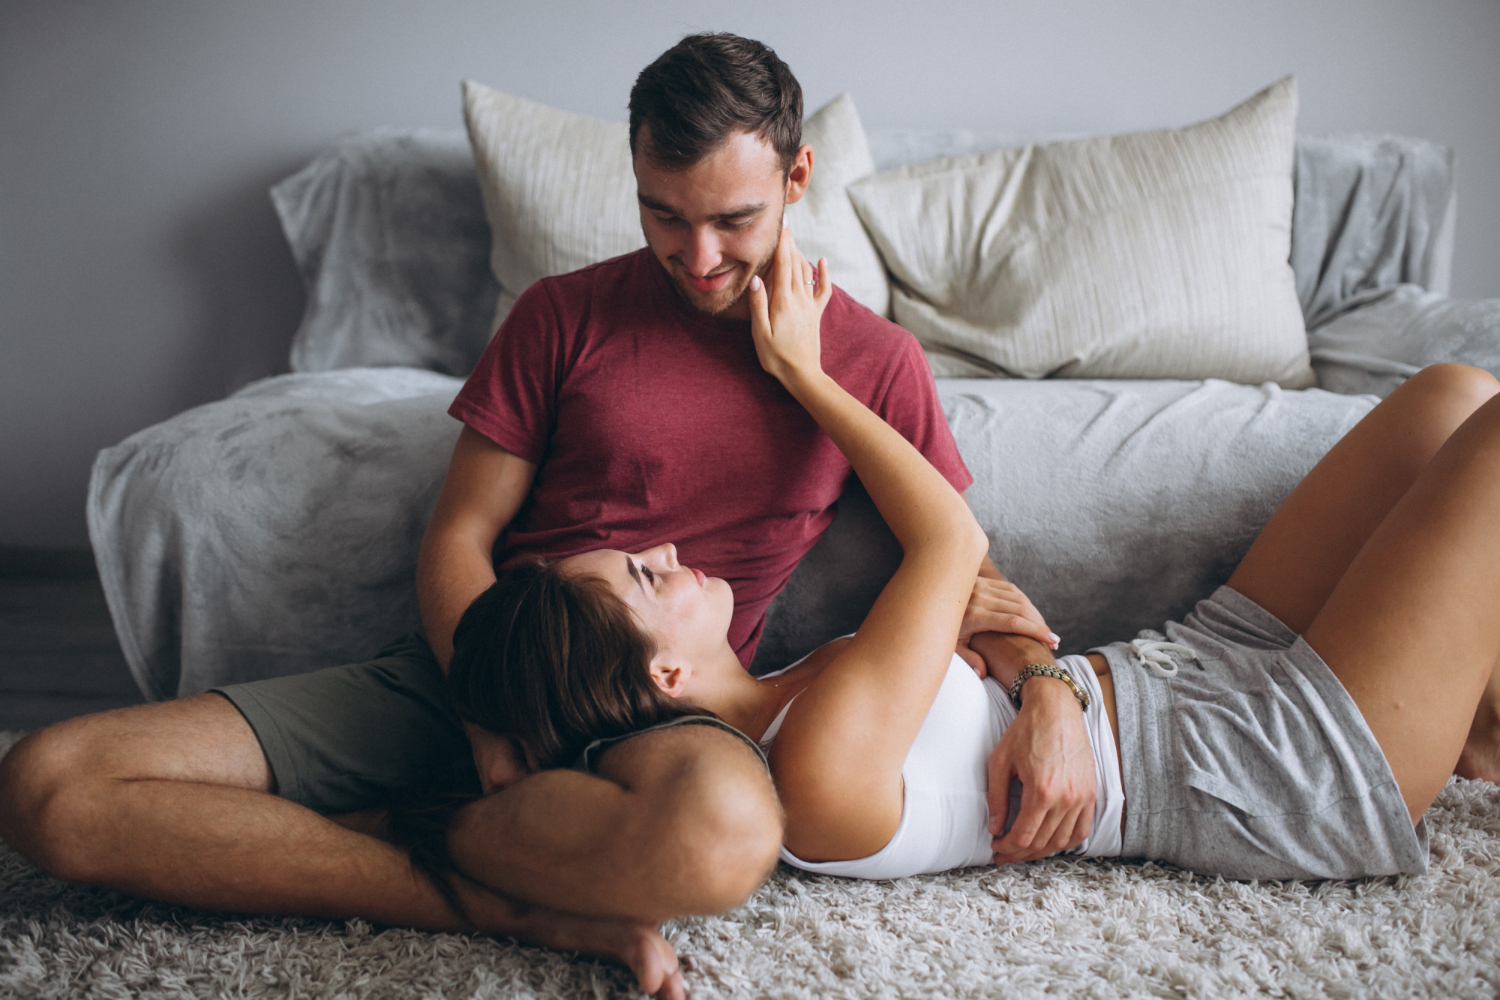 Як вести брудні розмови з партнером: 5 порад секс-експертів
